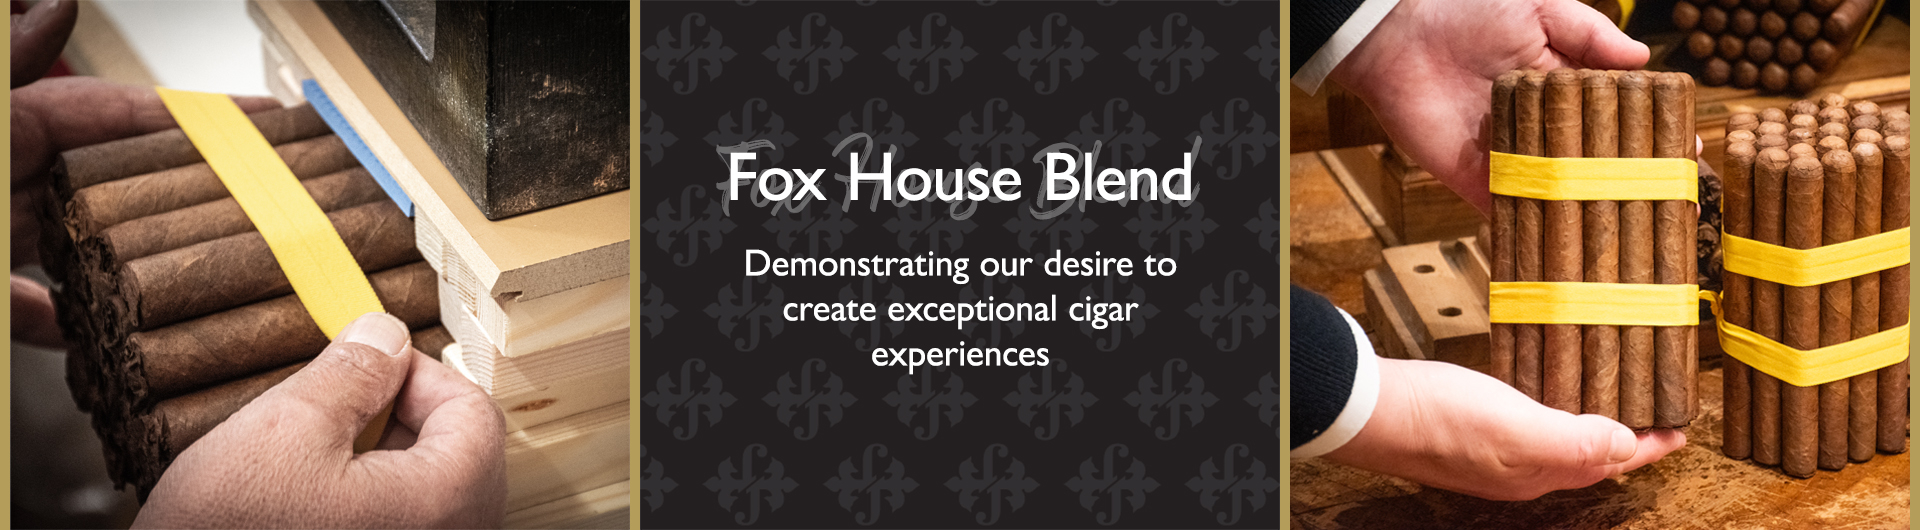 Fox House Blend Launch